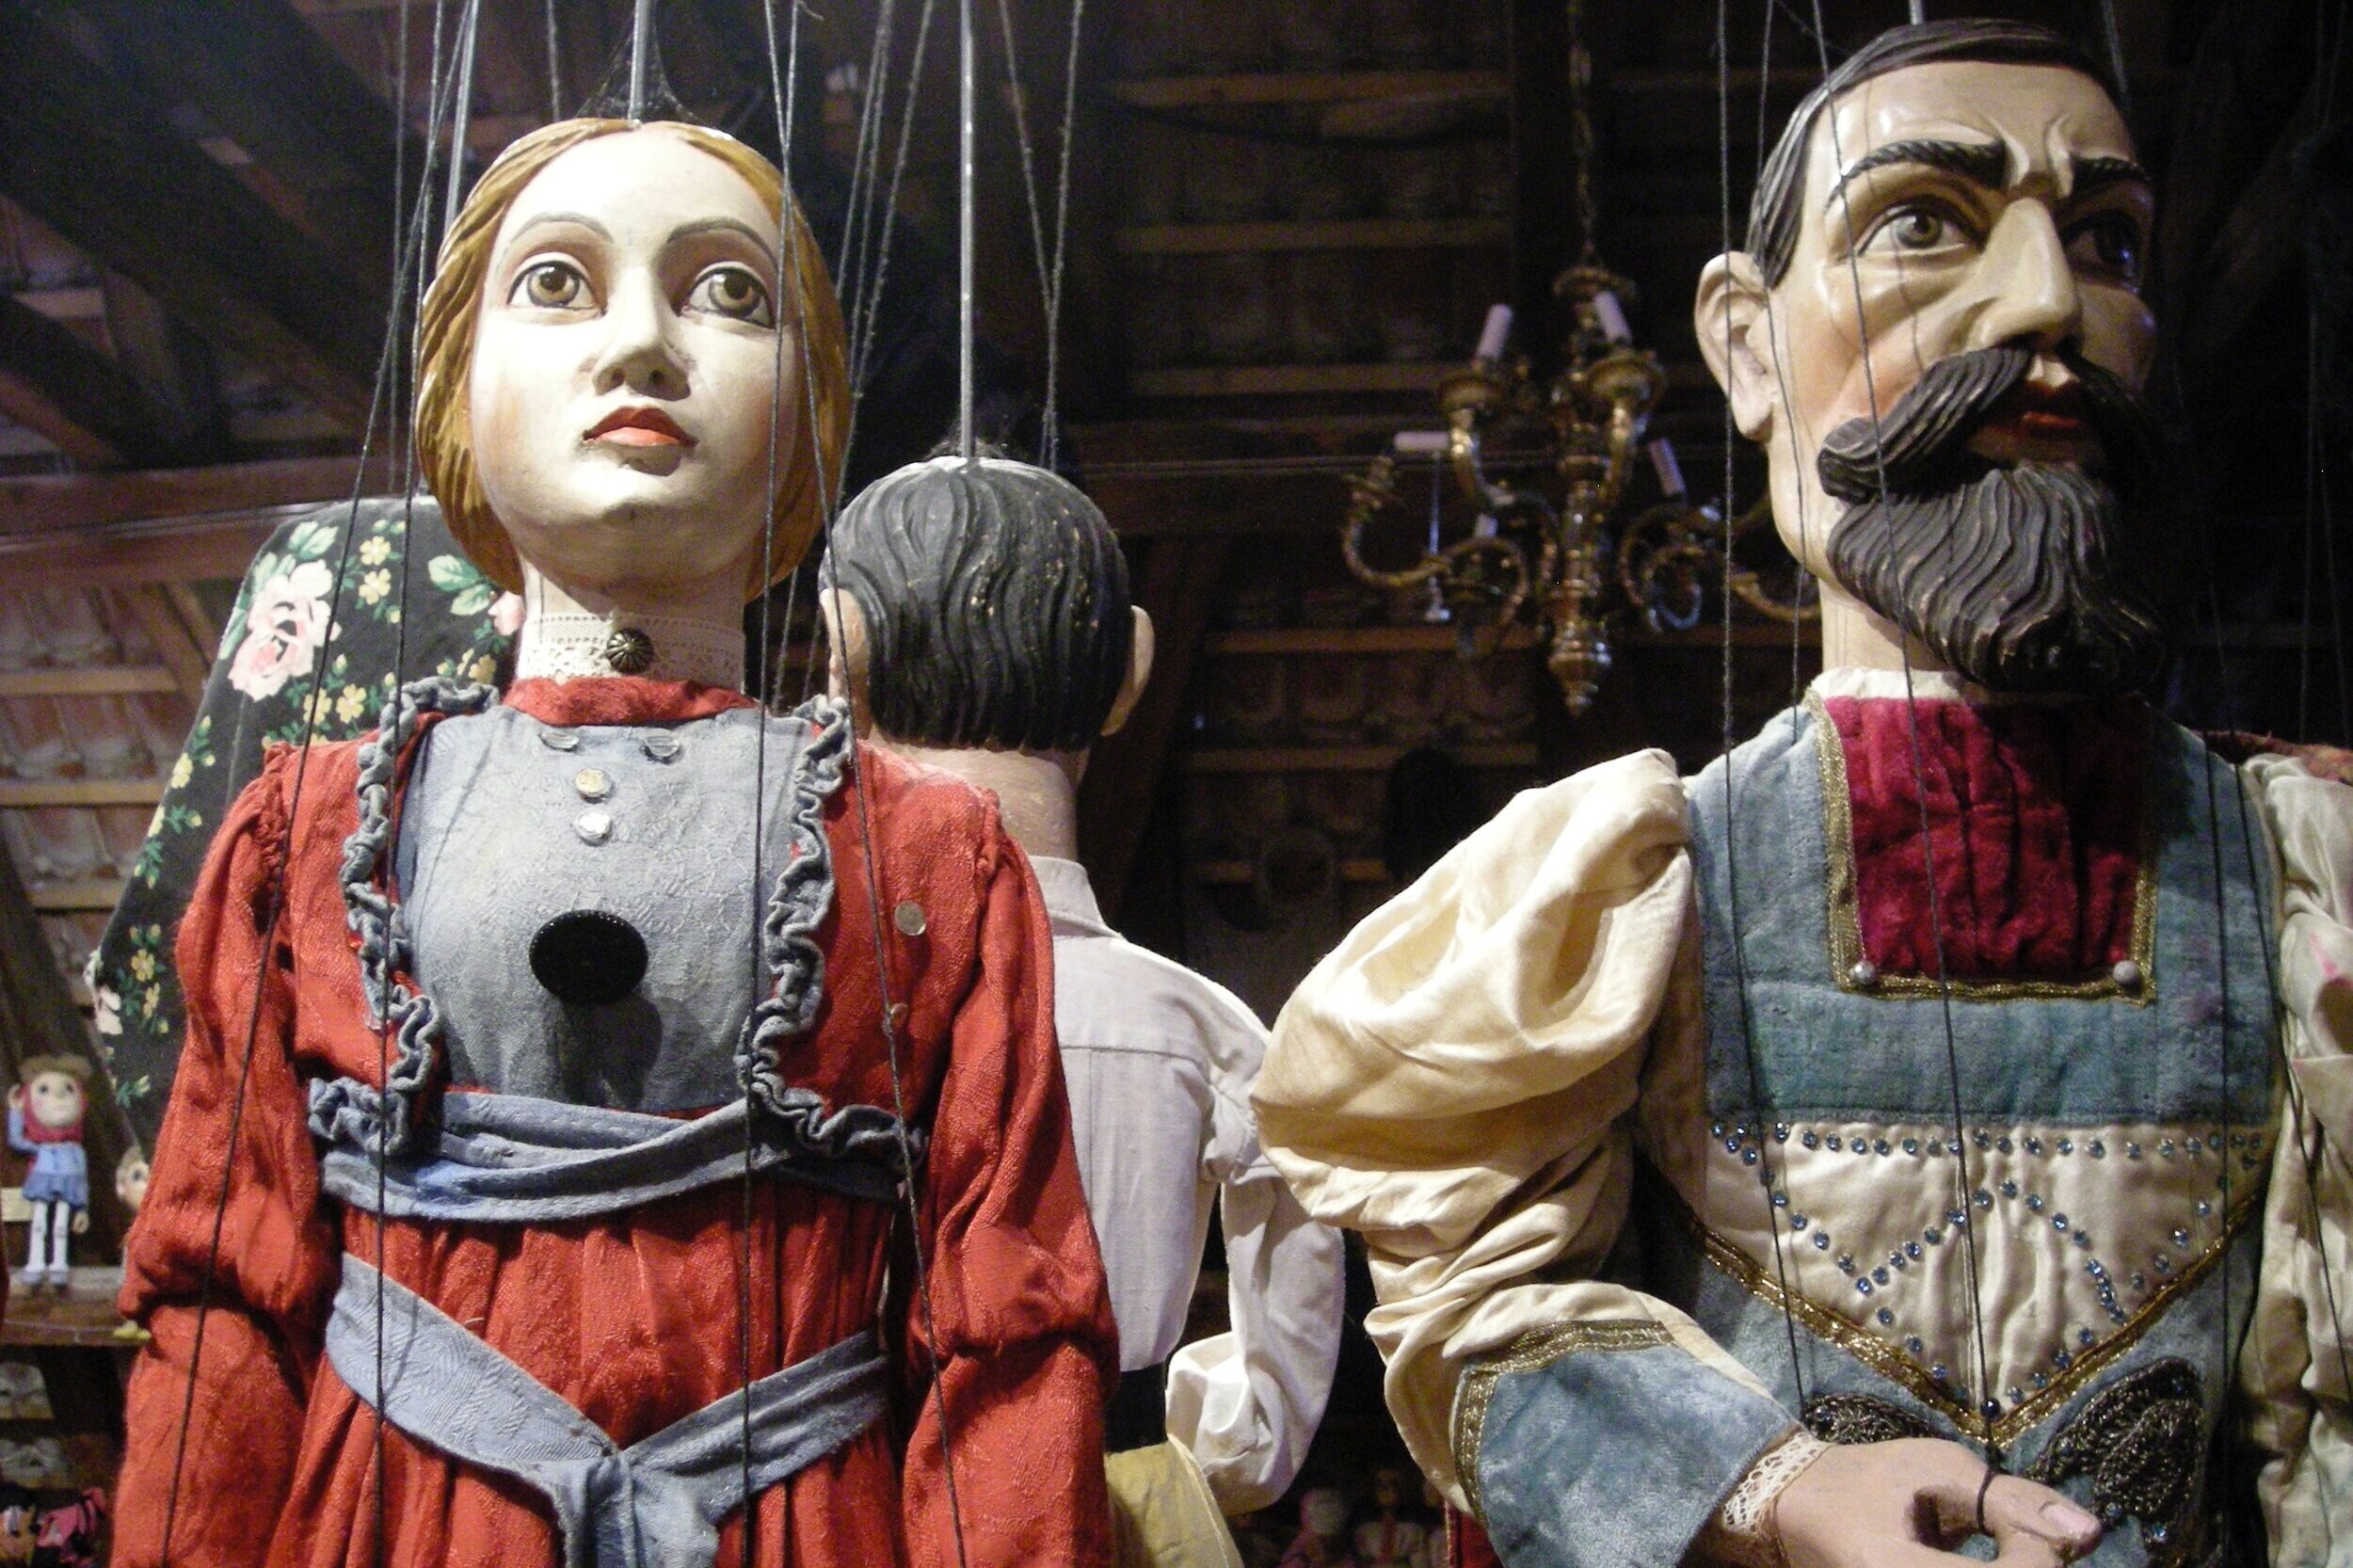 Cesky Krumlov marionettes